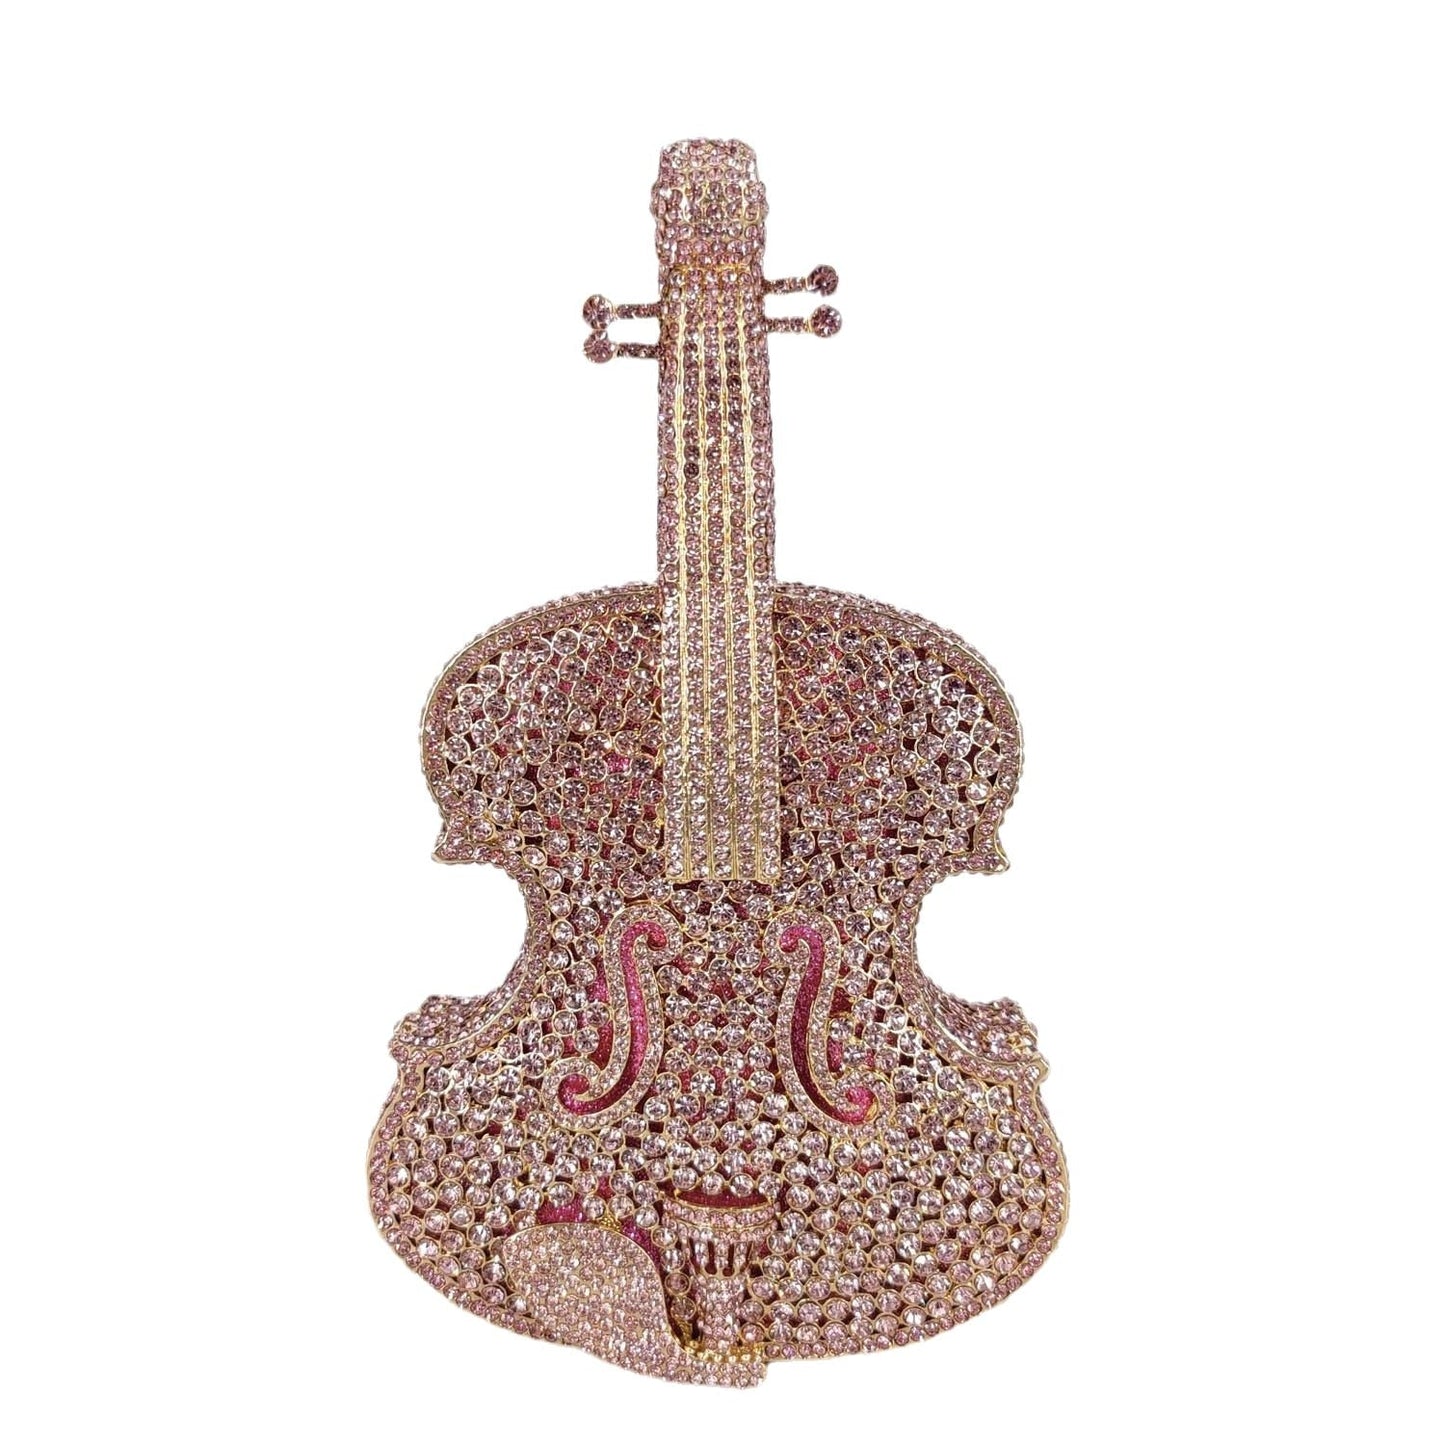 Violin Crystal Clutch Handbag Fashion Closet Clothing